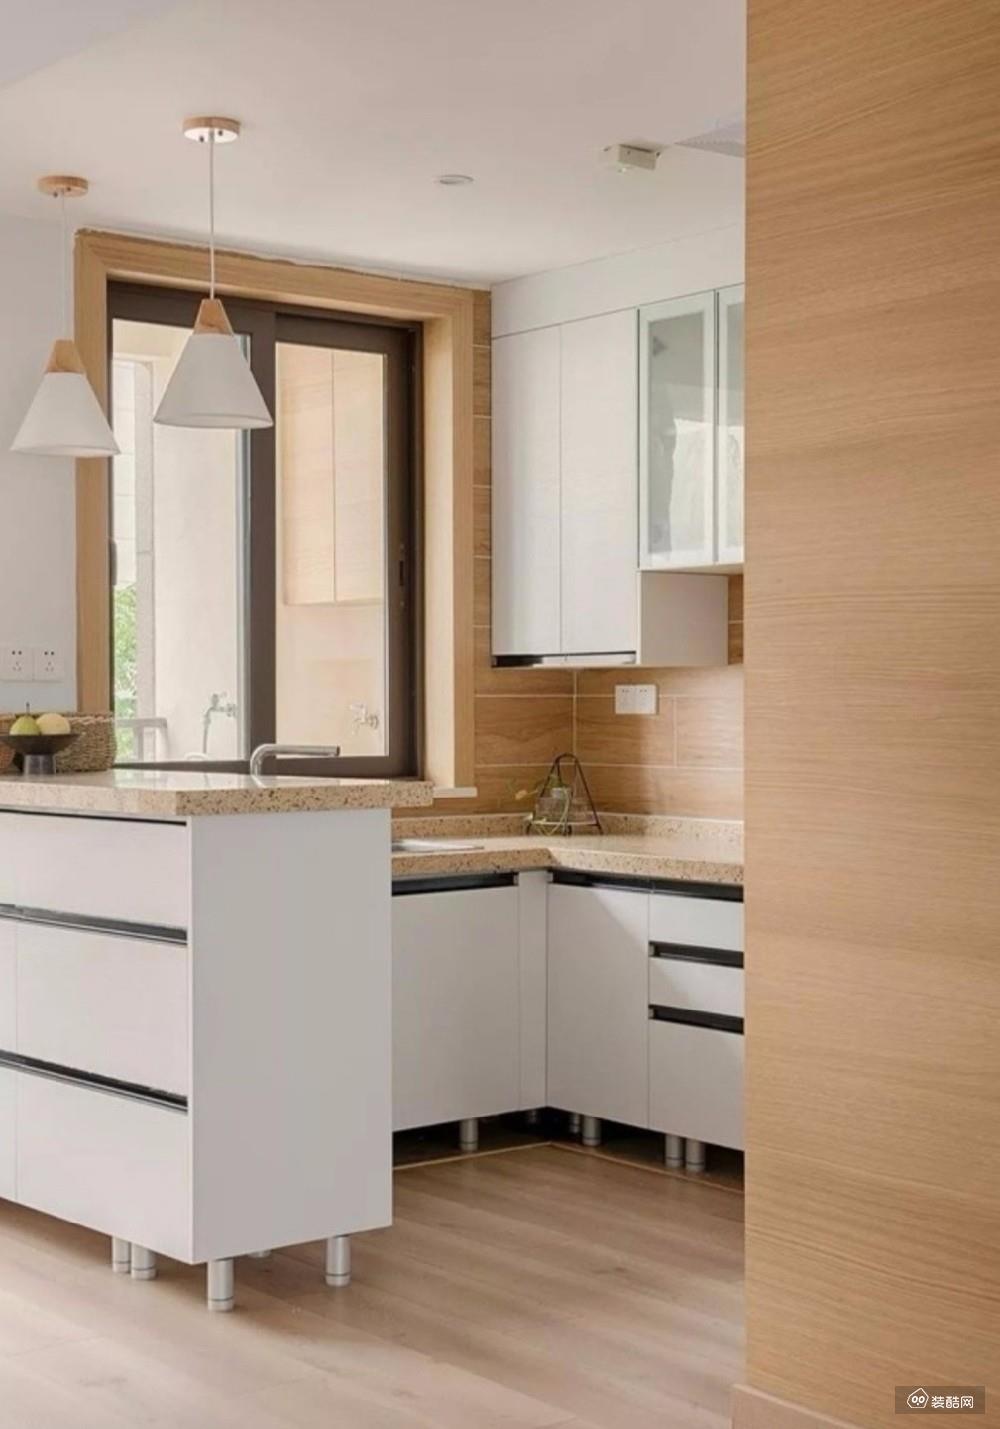 厨房采用原木色搭配上白色的橱柜,整个空间保持一贯的简洁风格